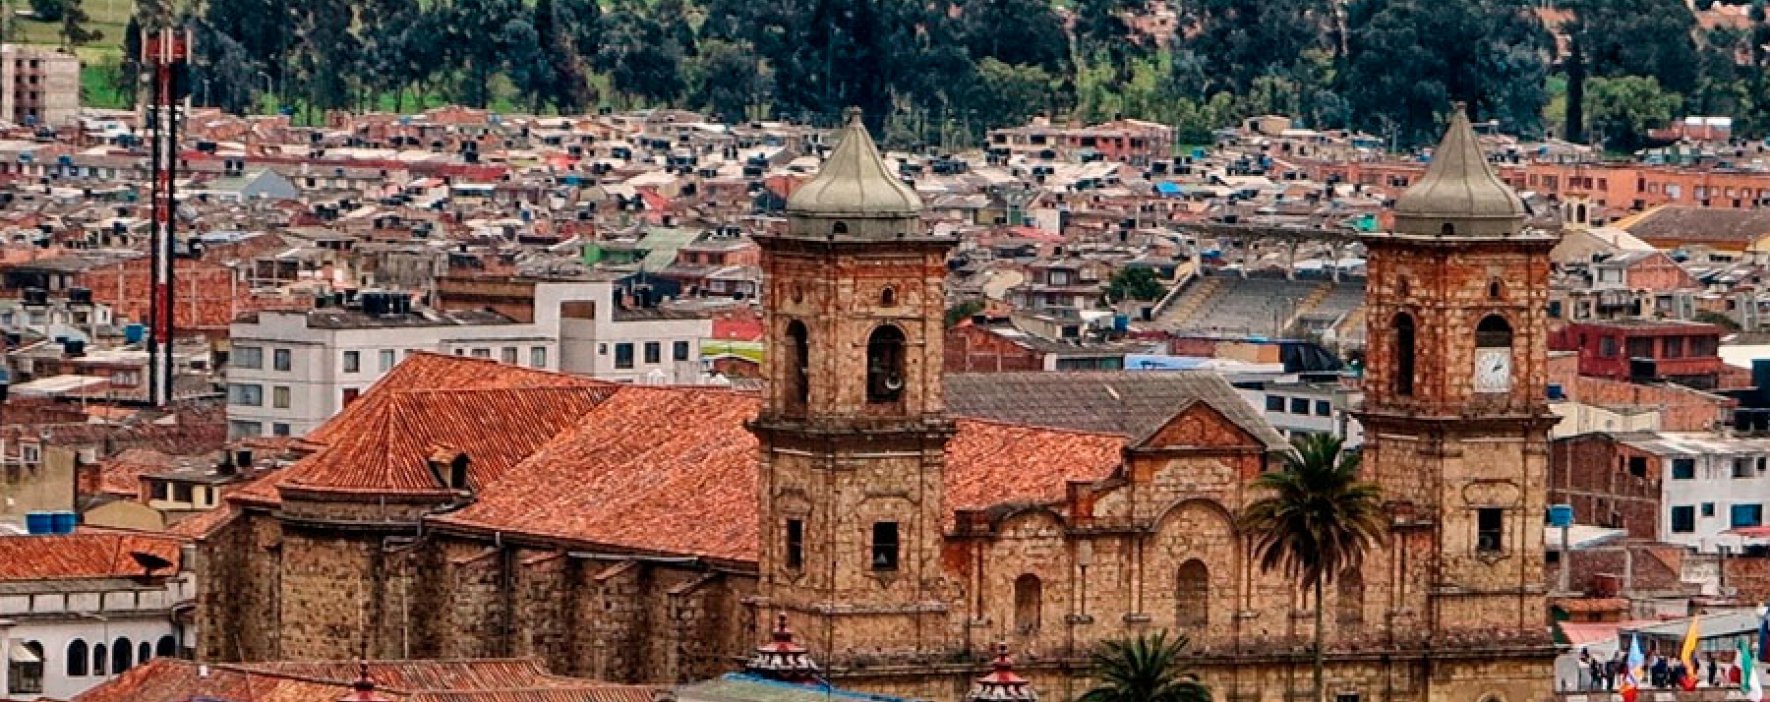 Zipaquirá, un ejemplo de desarrollo en Colombia